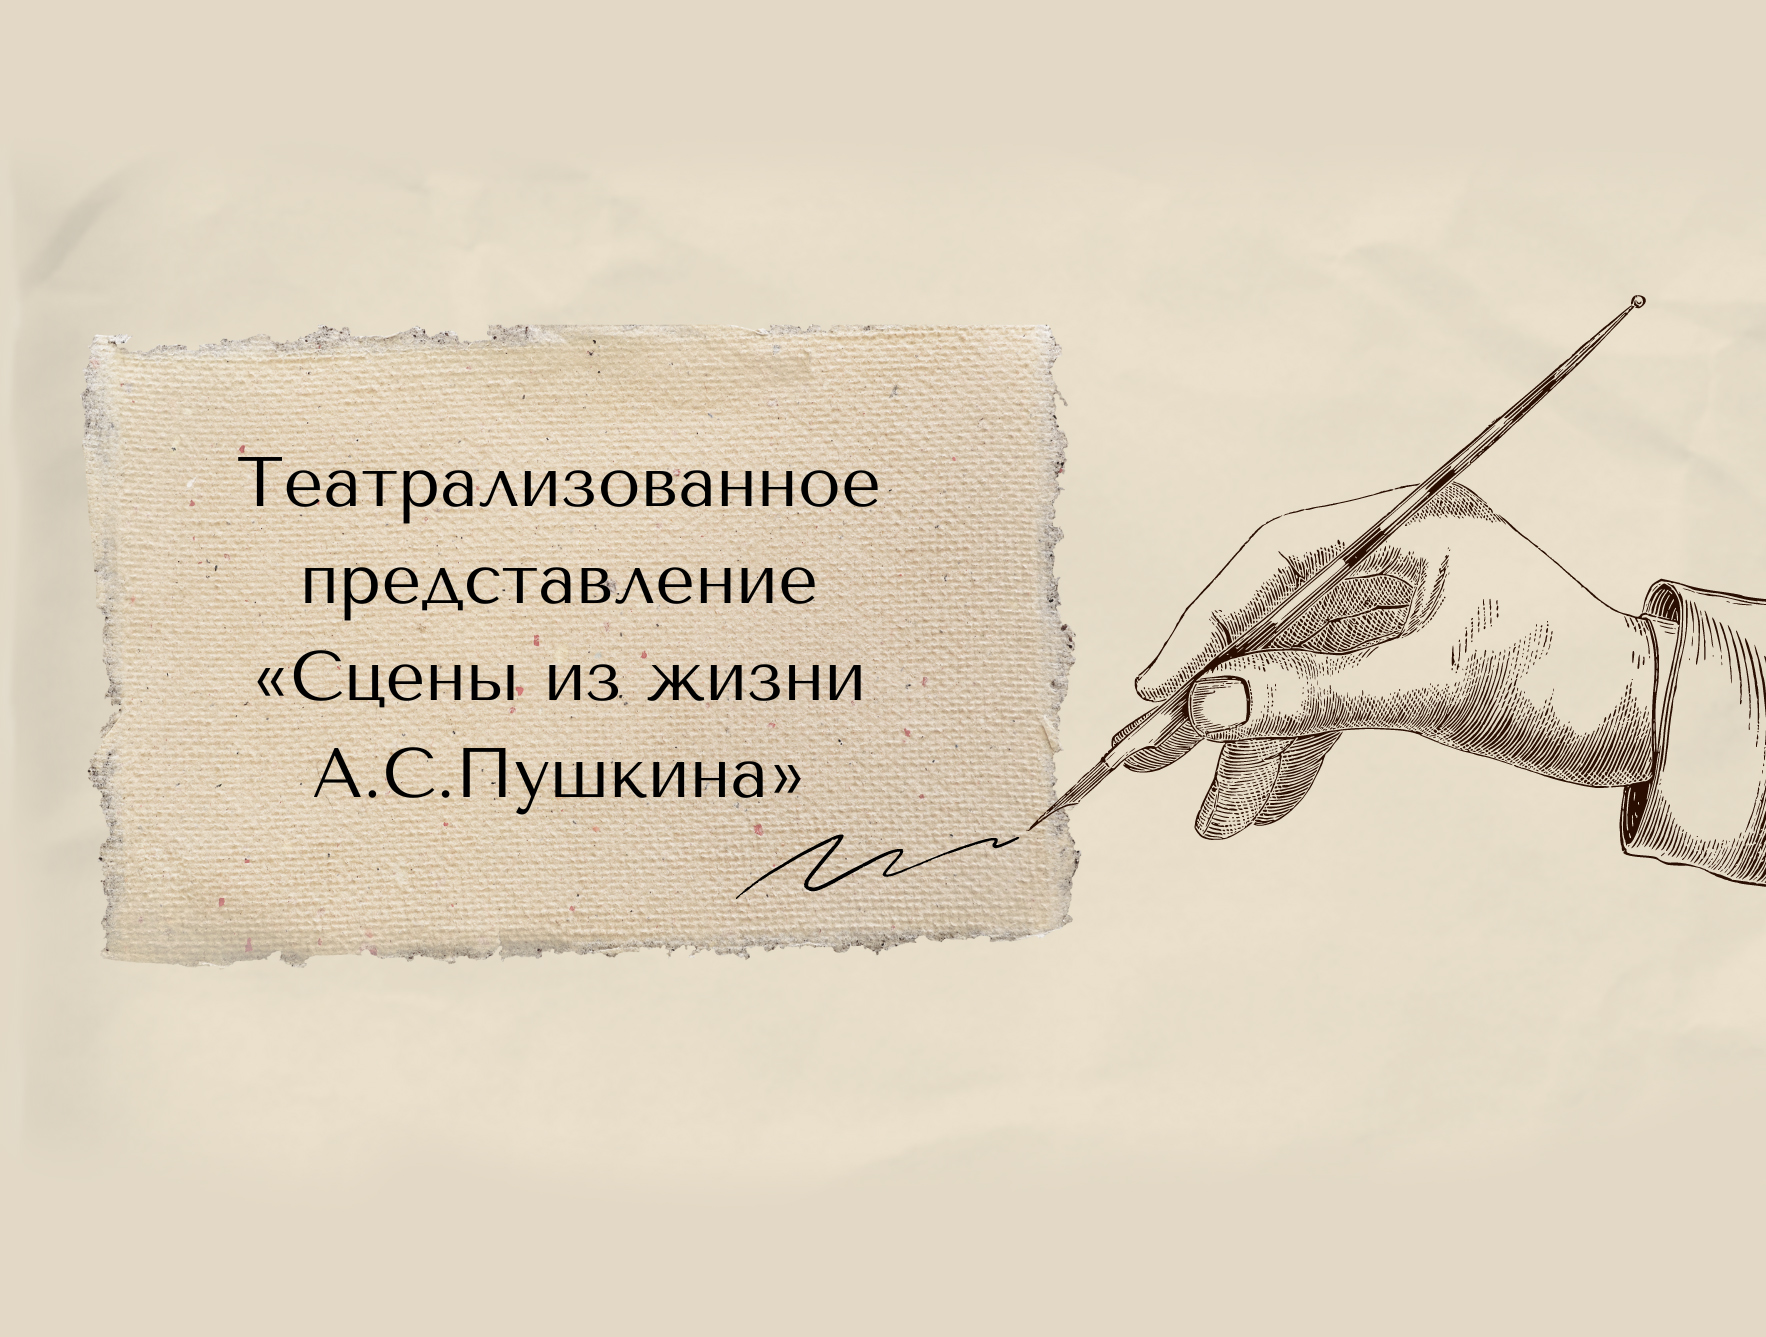 Театрализованное представление «Сцены из жизни А.С.Пушкина» (12+).